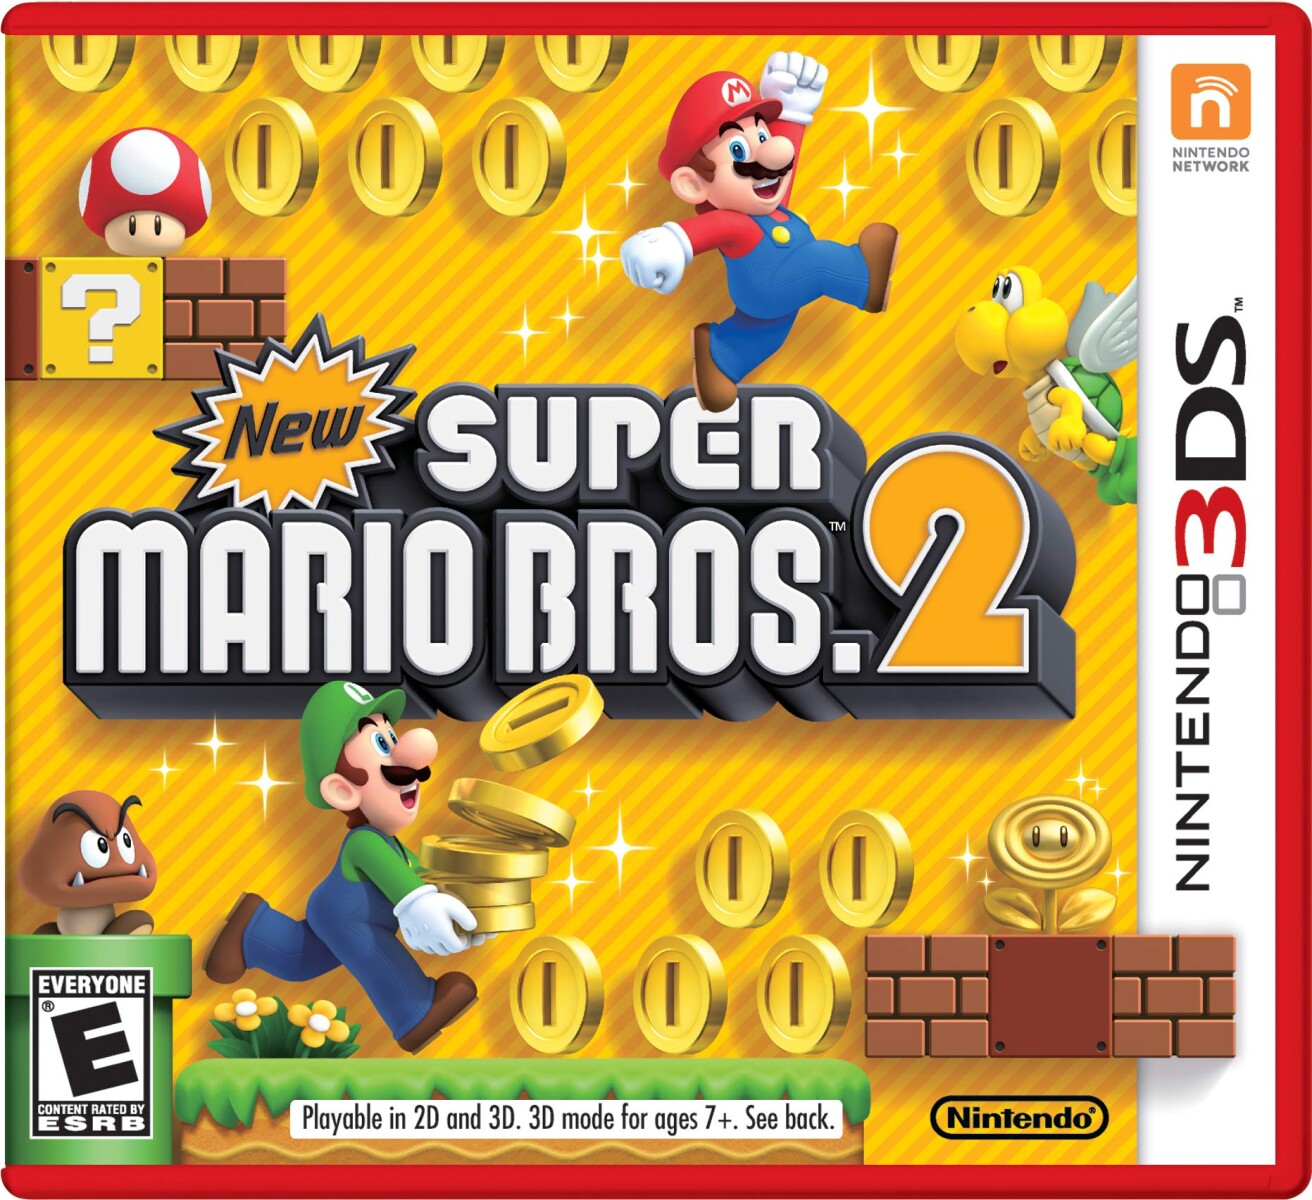 Super Mario Bros 2 